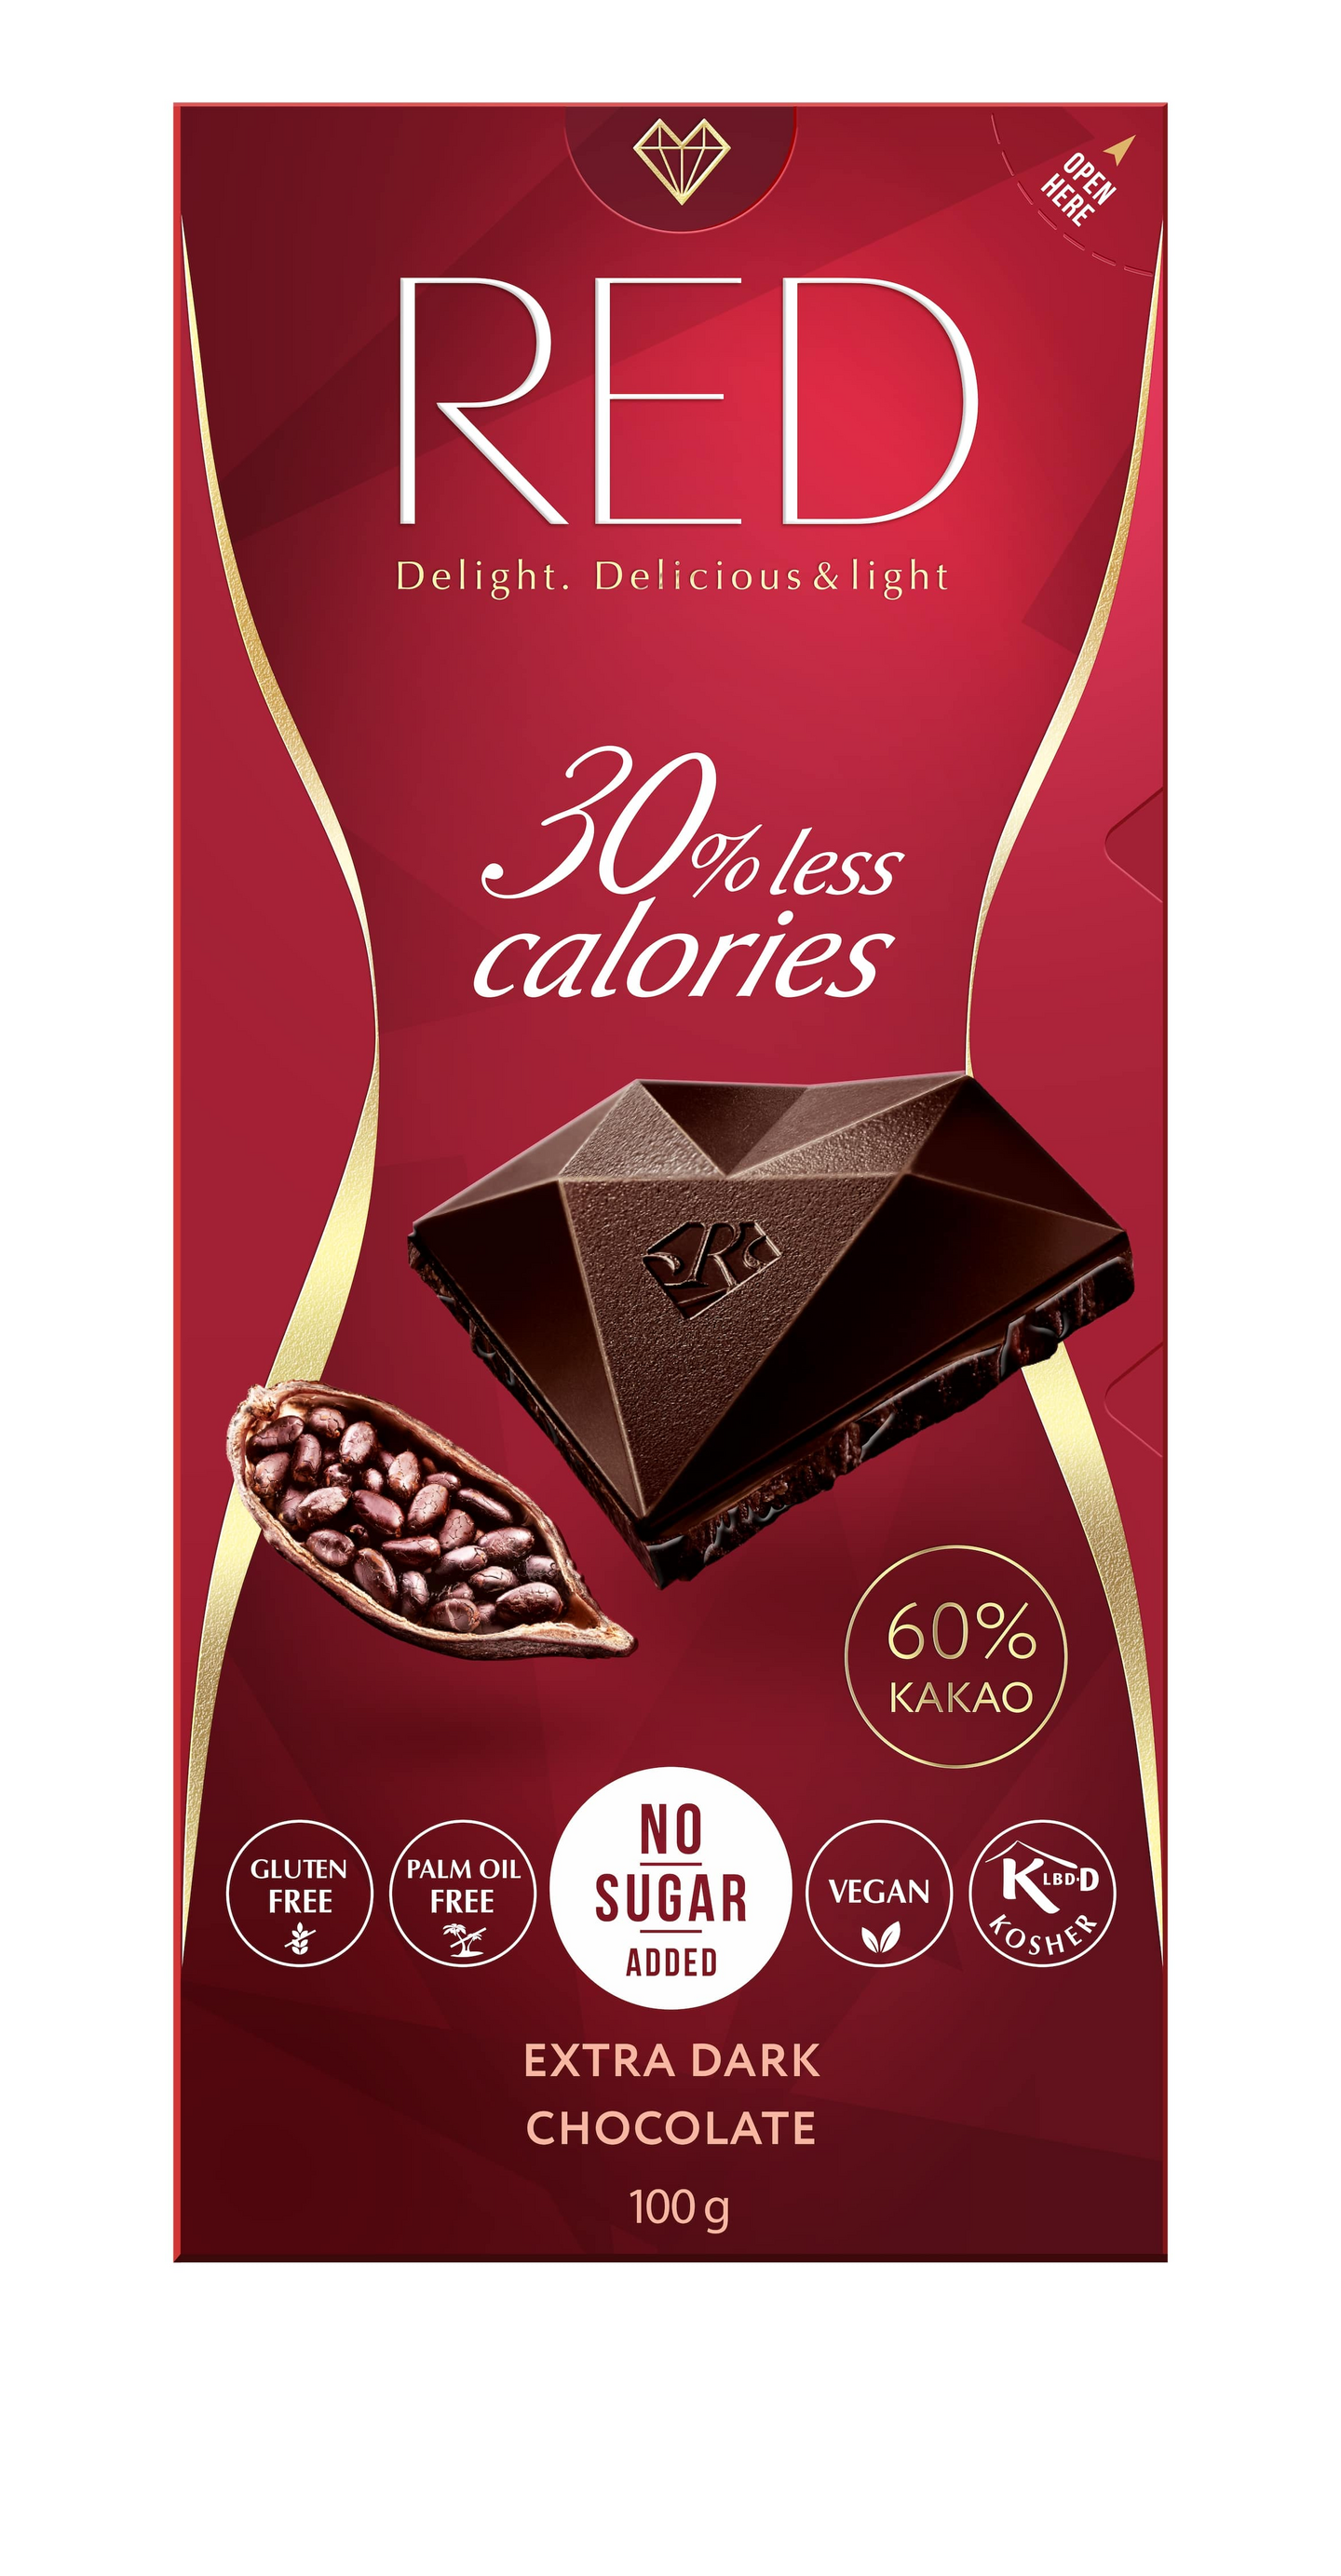 RED extra tumma suklaa 100g vähäkalorinen